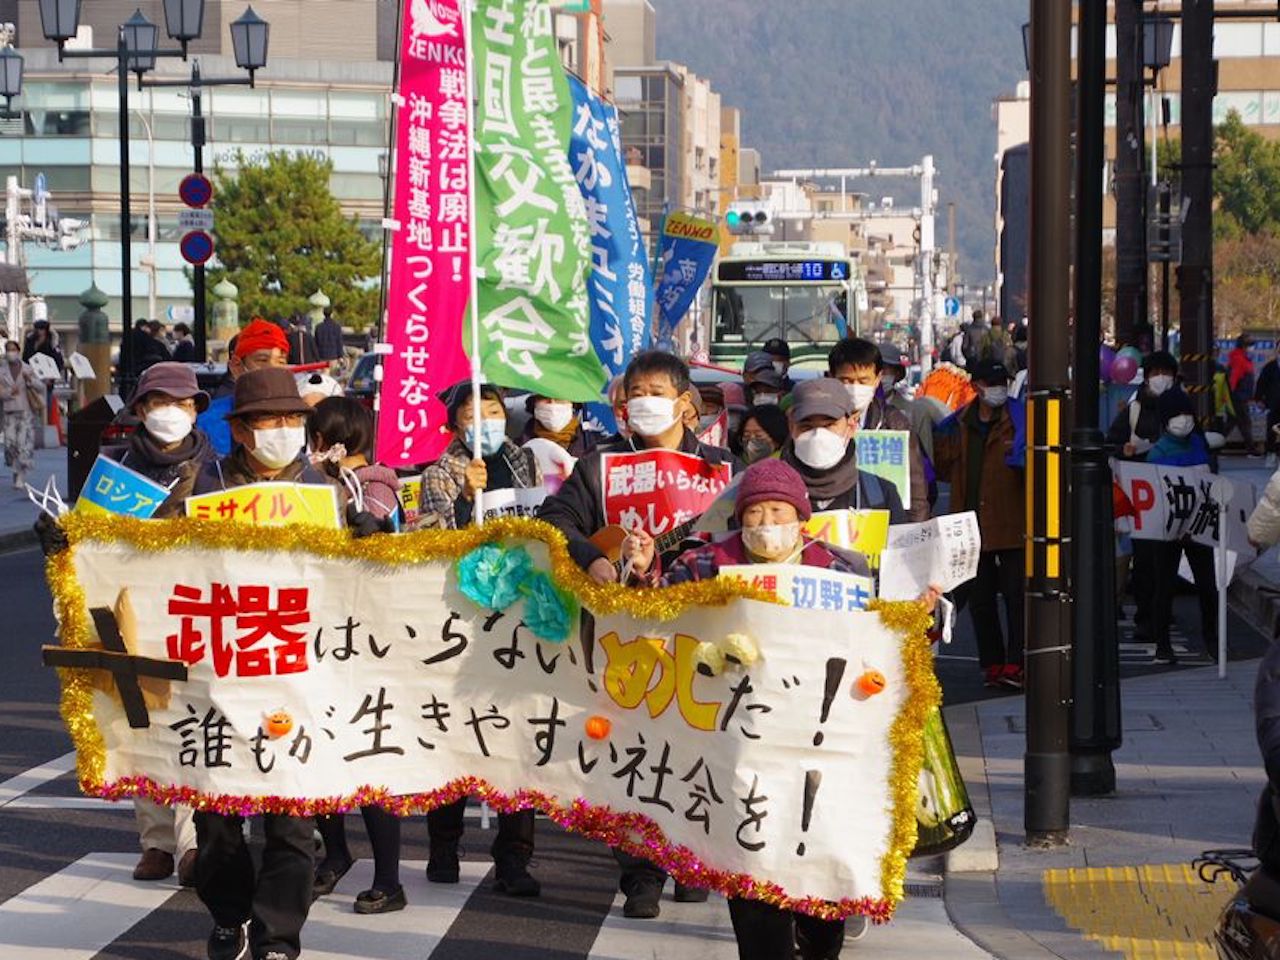 武器はいらない！めしだ！新年とともに、全国から戦争・大軍拡ＮＯと声上げる。京都の中心街ではZENKO京都が呼びかけ「命と生活守れ」とパレード